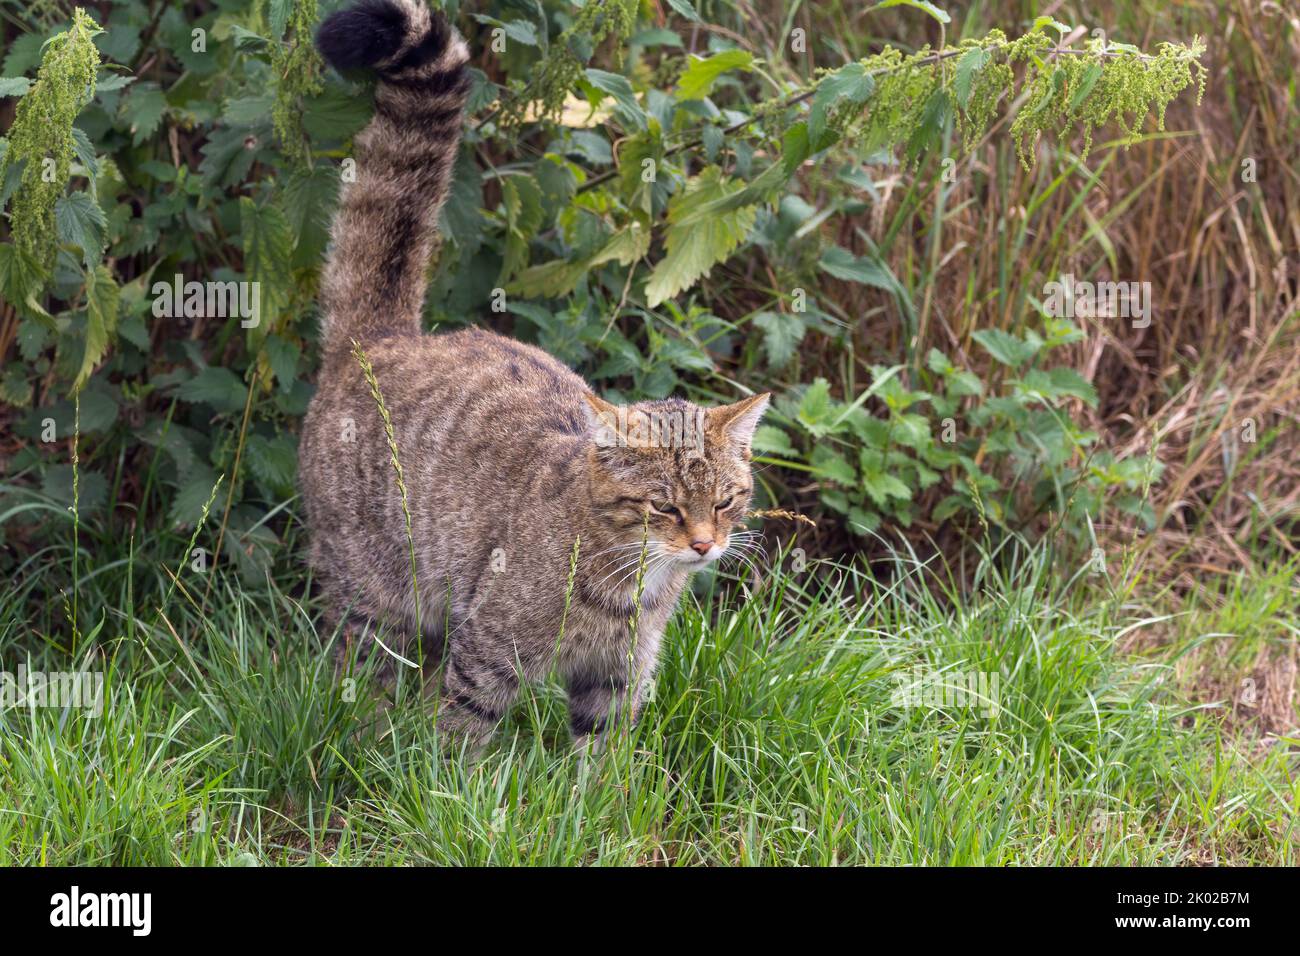 Schottische Wildkatze (Felis silvestris) Zuchtprogramm in Gefangenschaft. Große wild gestromte Katze buschig stumpf Schwanz schwarze Ringe und Spitze dunkle Streifen auf Fell Stockfoto